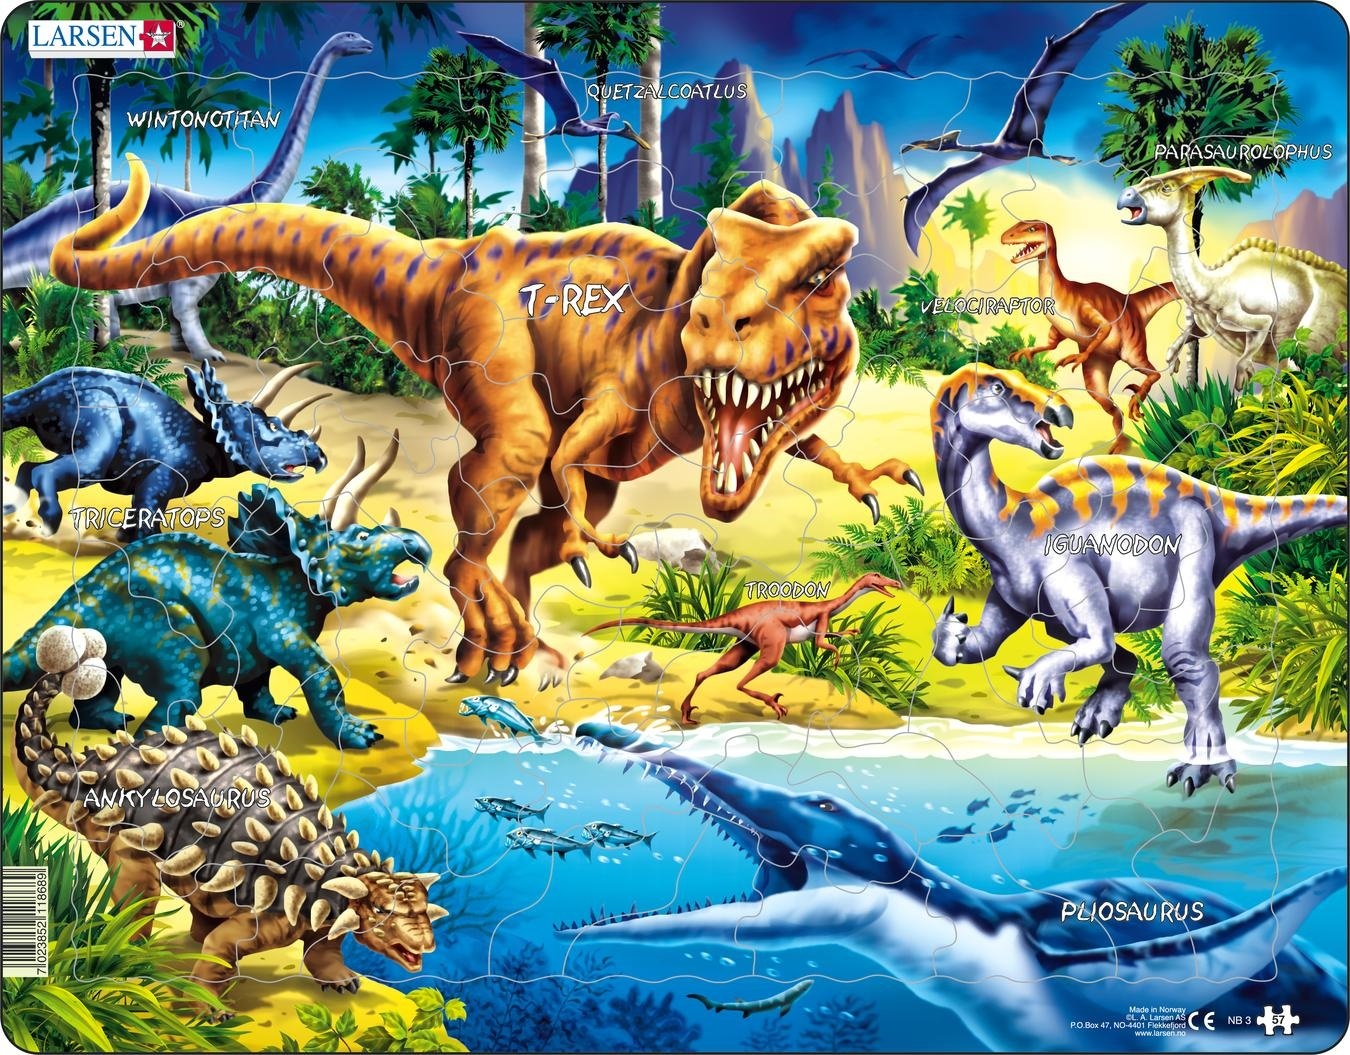 Larsen Maxi Dieren Dinosaurussen uit het Krijt tijdperk  57 stukjes